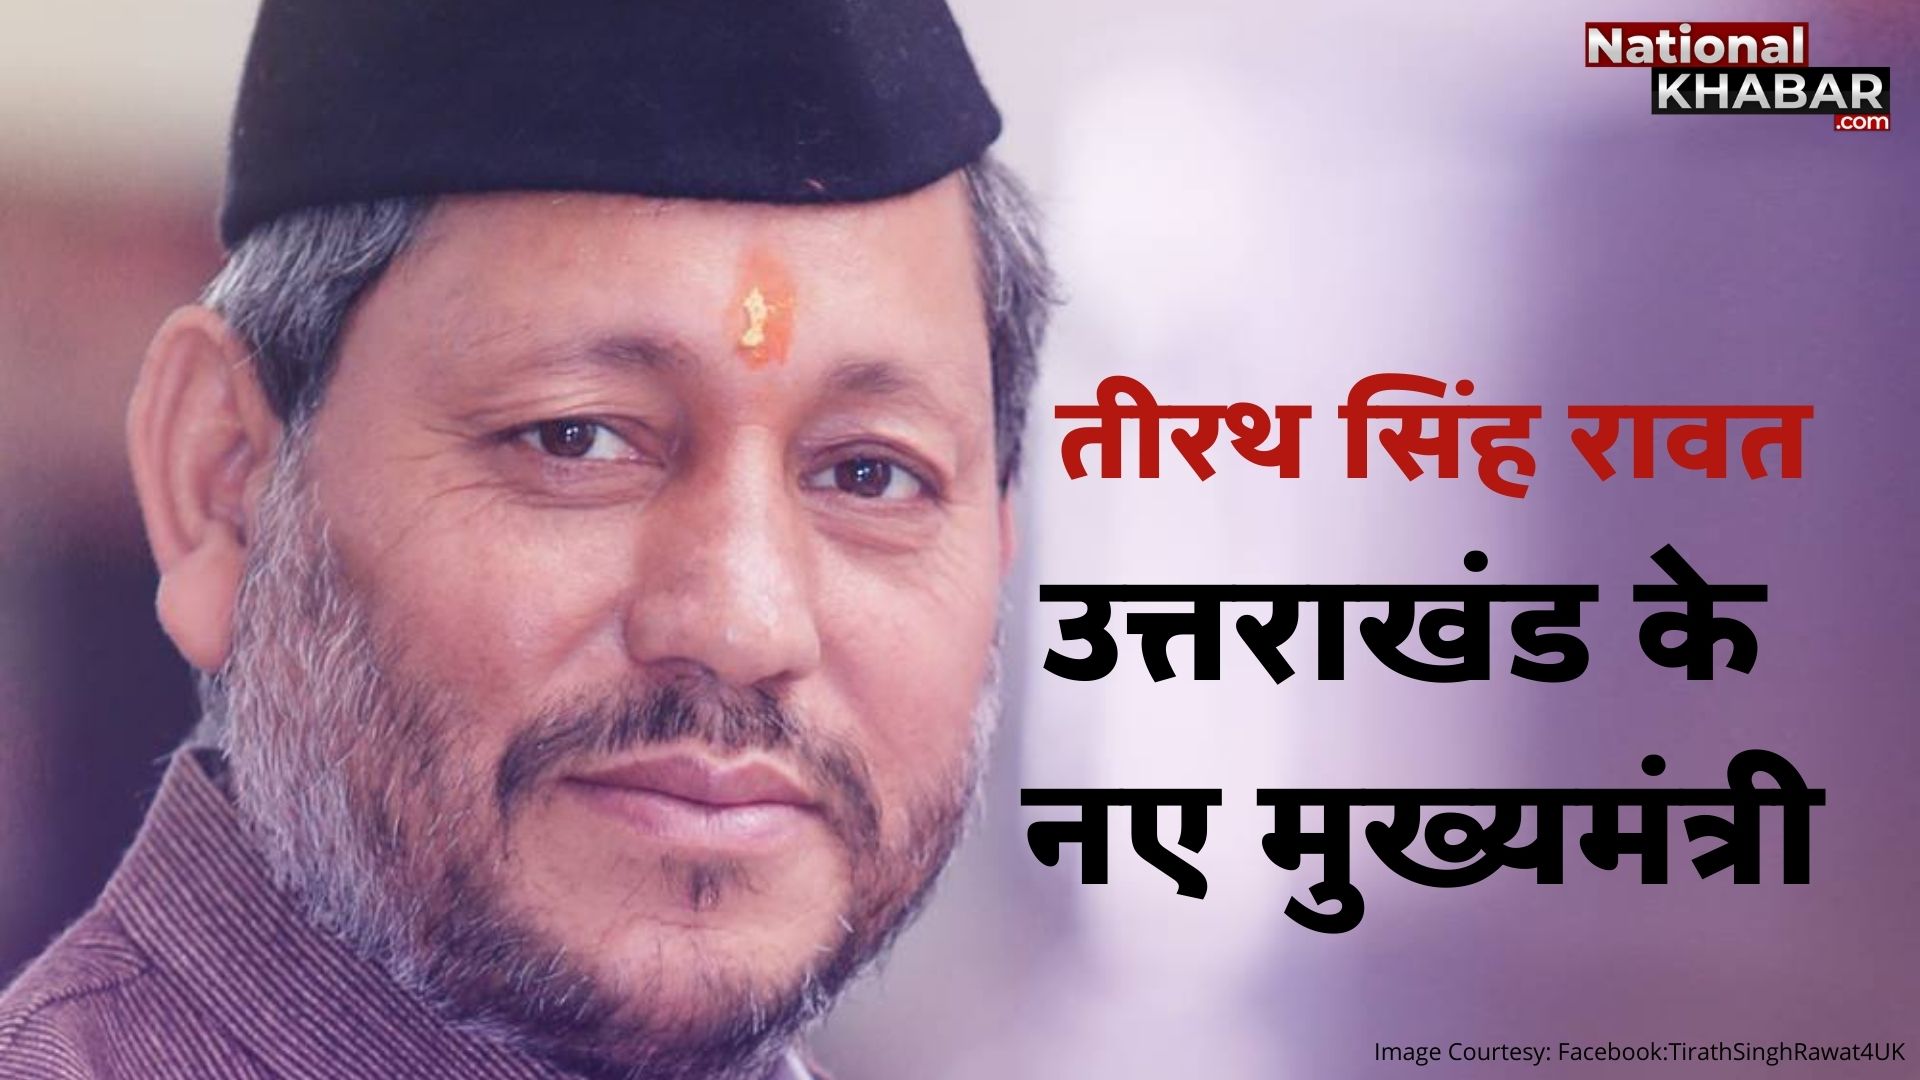 Uttrakhand New CM Tirath Singh Rawat: तीरथ सिंह रावत ने ली उत्तराखंड के सीएम पद की शपथ